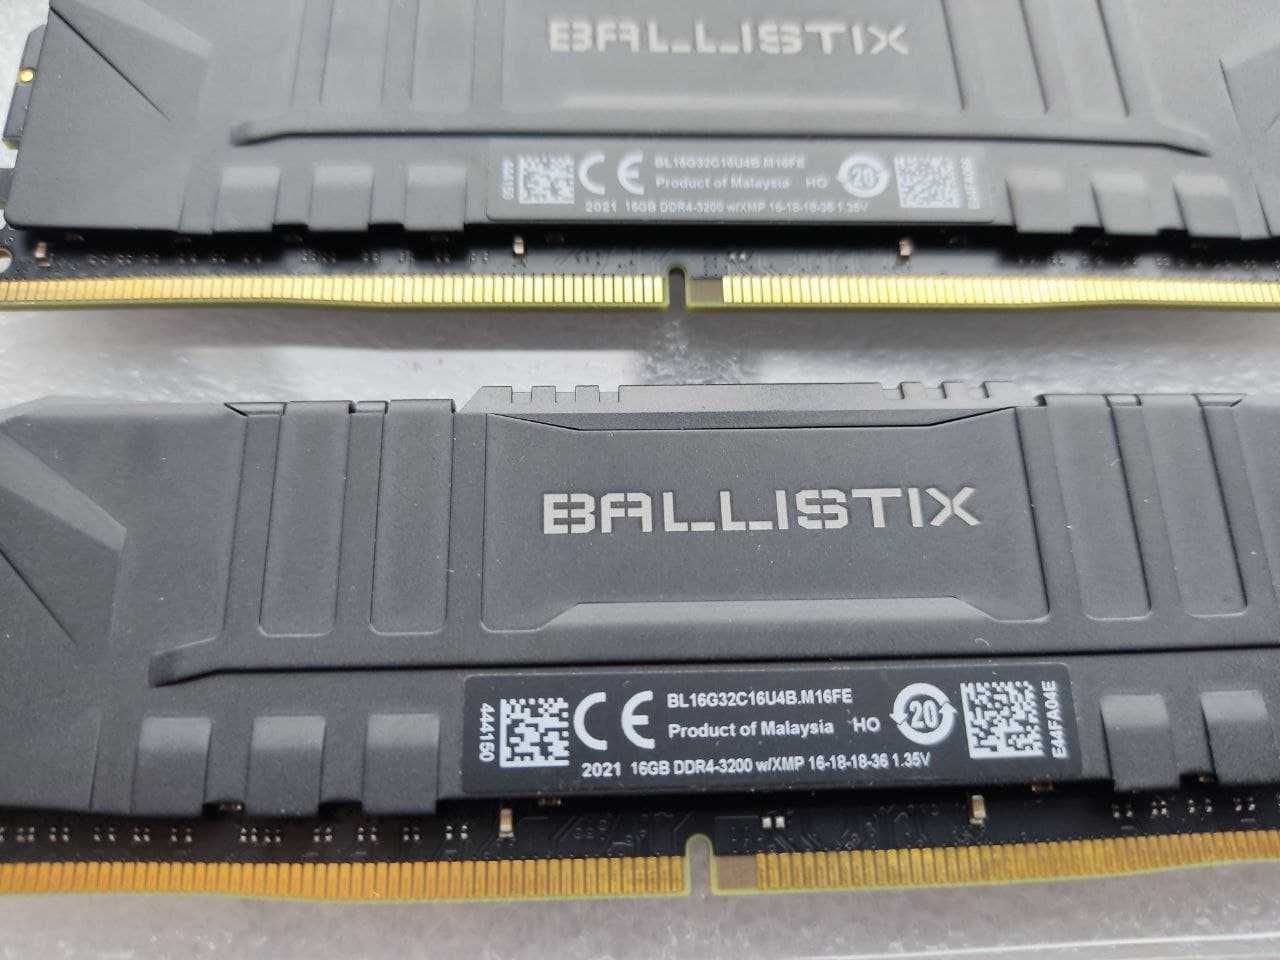 Crucial Ballistix DDR4 3200 32gb BL2K16G32C16U4B